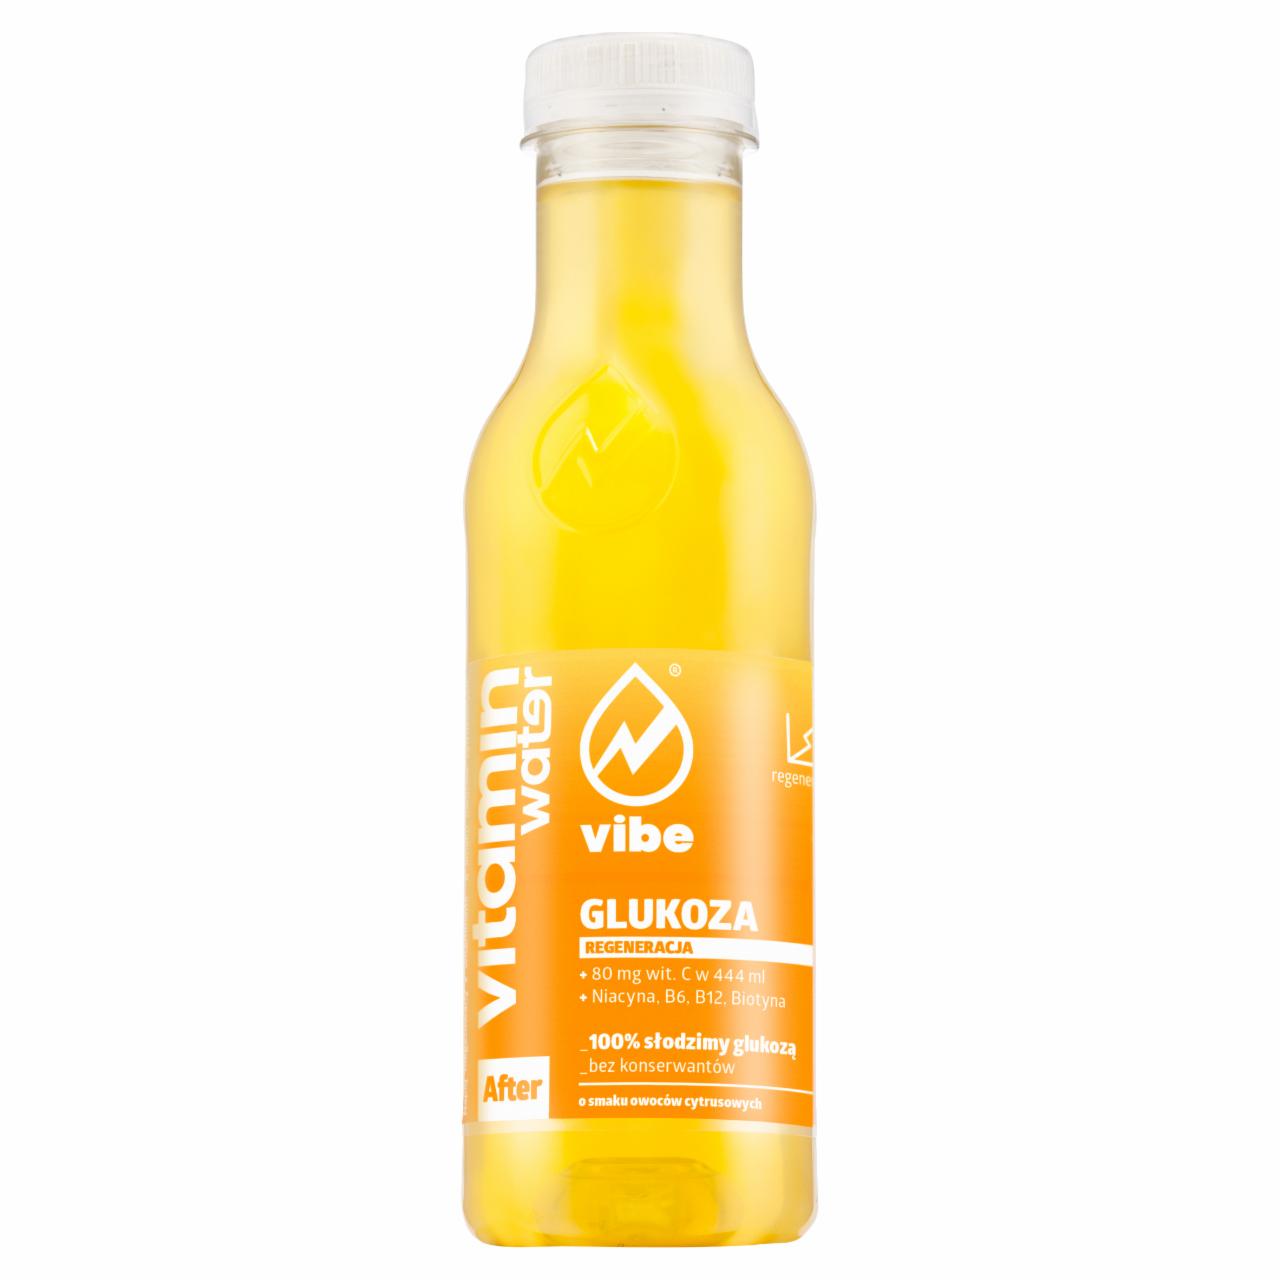 Zdjęcia - Vibe Vitamin Water After Glukoza Napój niegazowany 444 ml